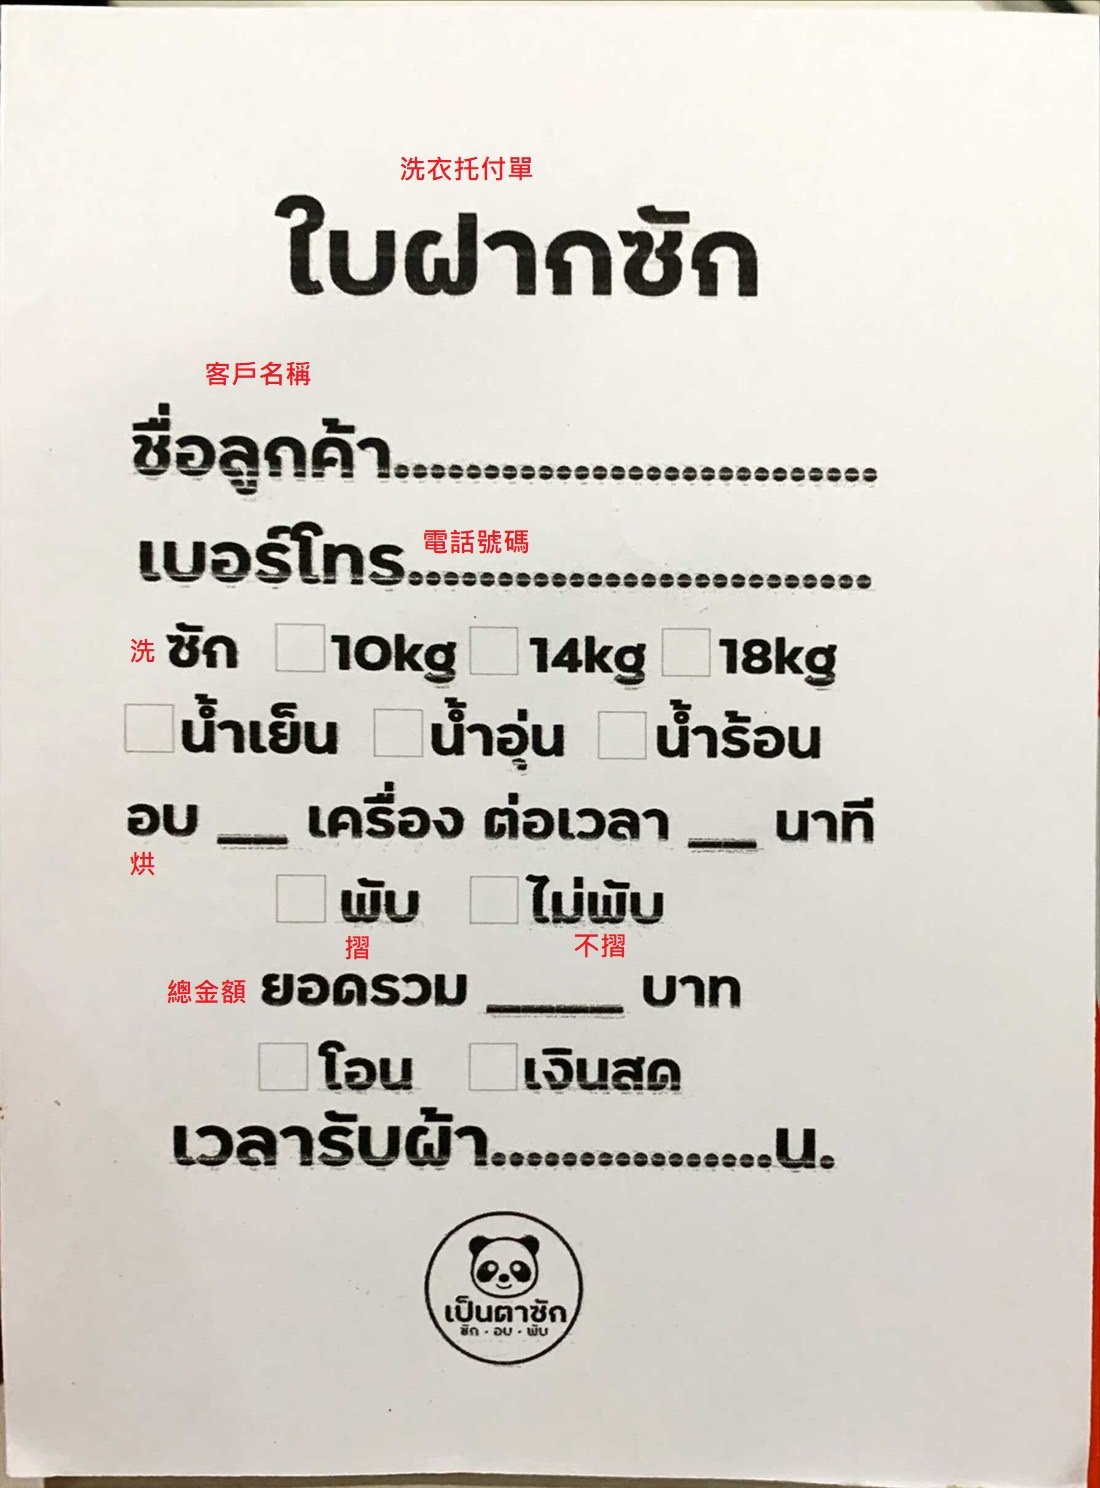 泰國自助洗衣店－額外洗衣服務託付單翻譯